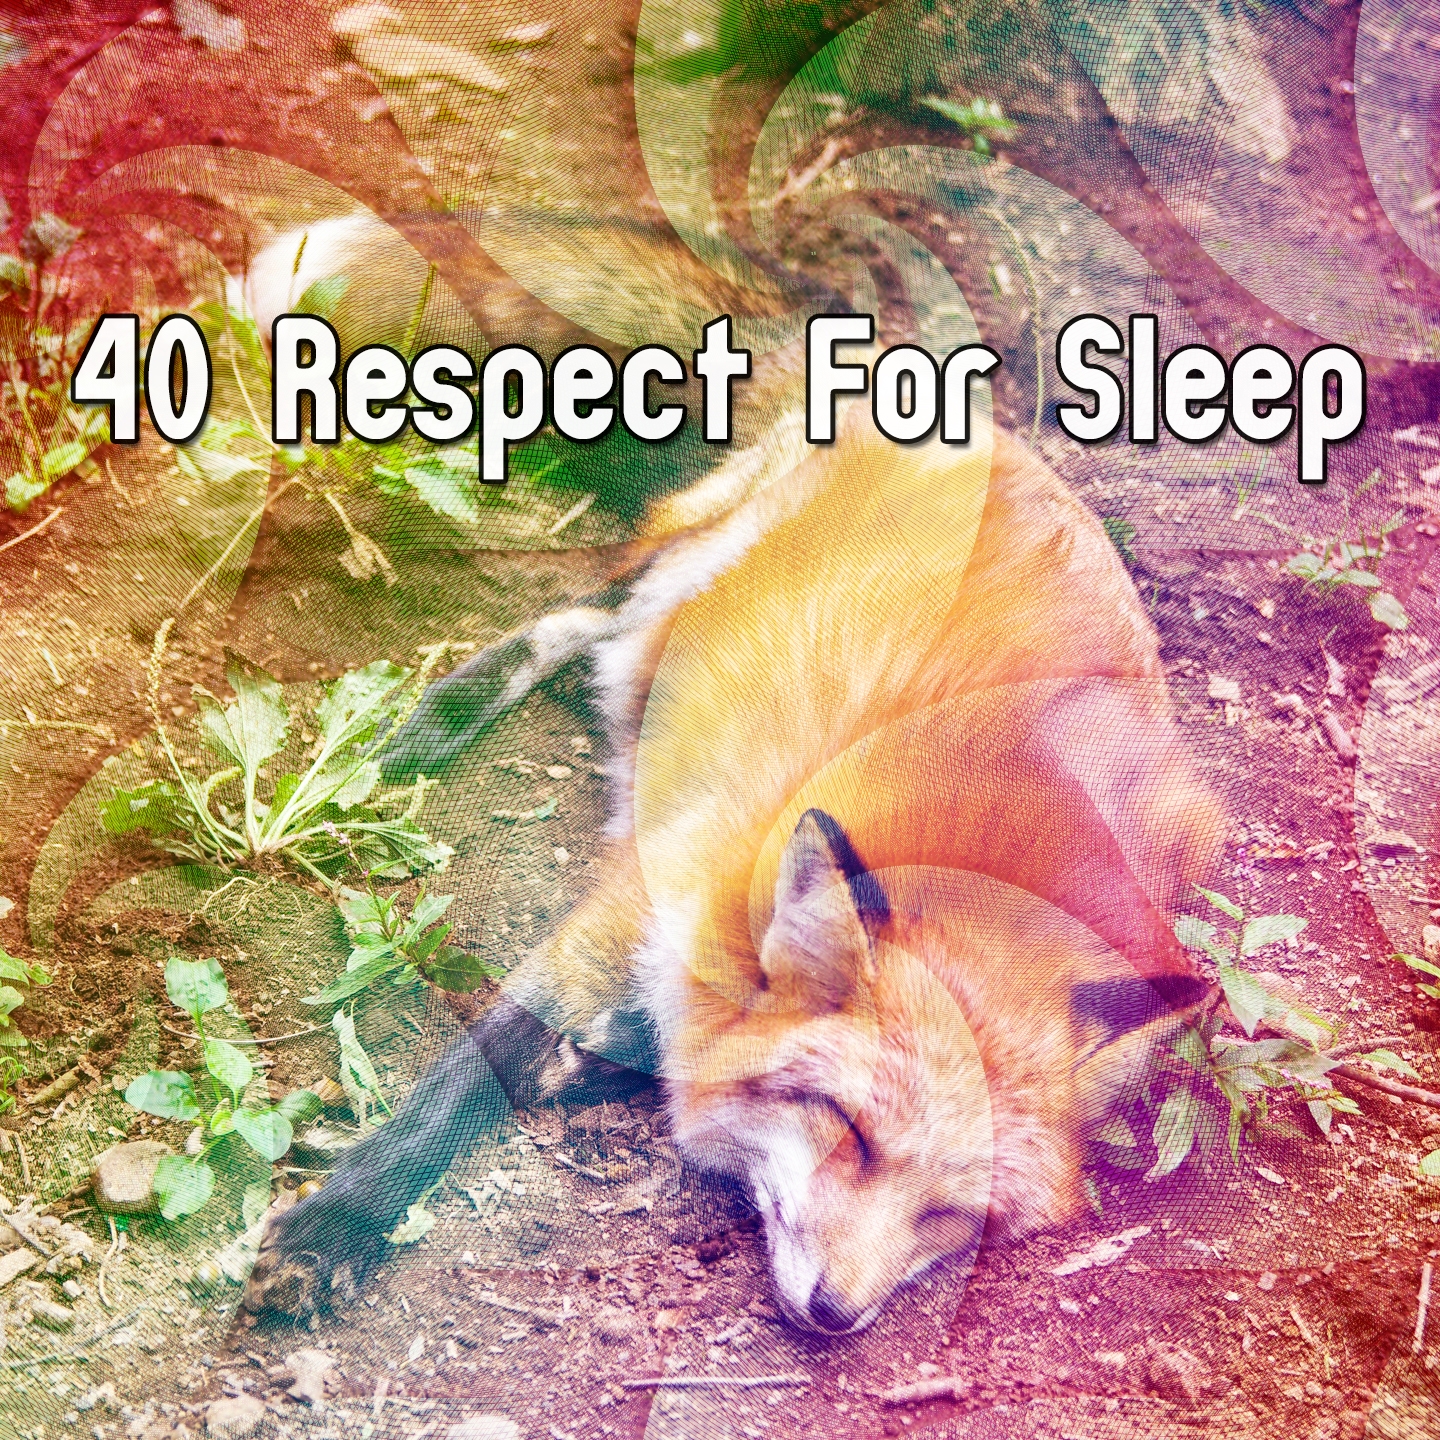 40 Respect For Sleep